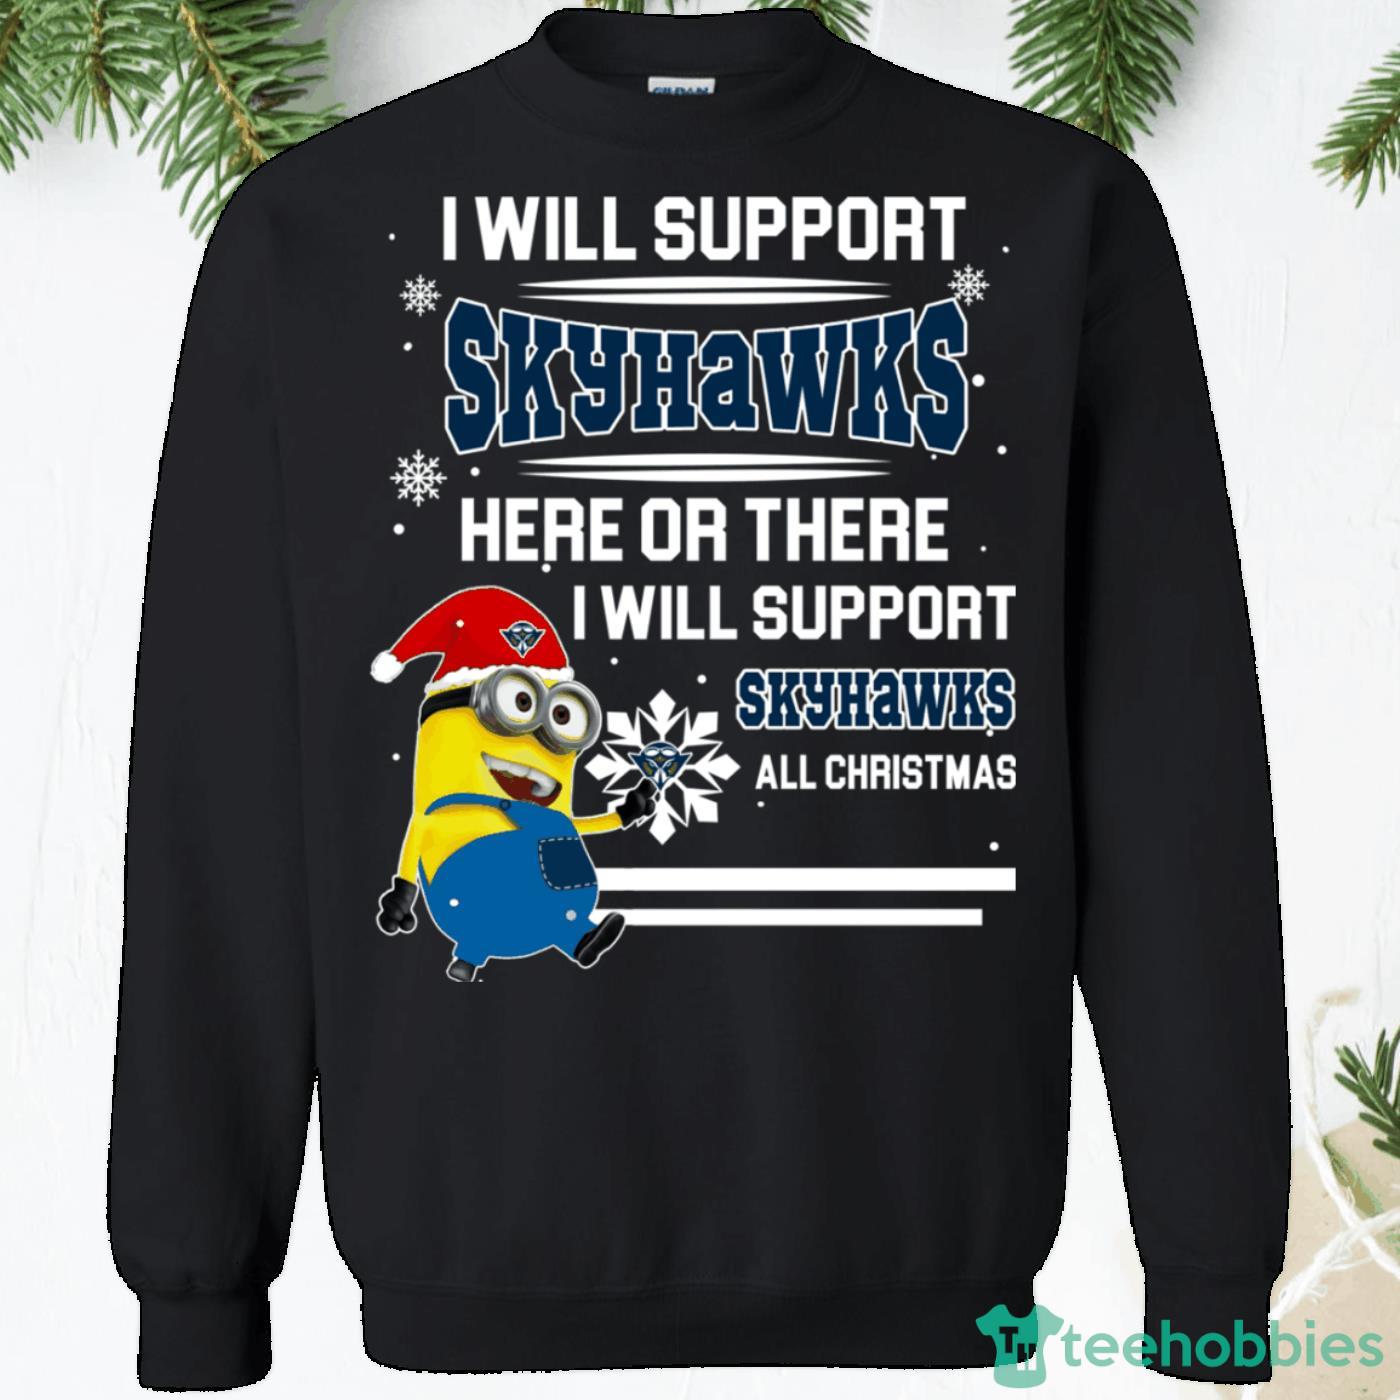 UT Martin Skyhawks Minion Christmas Sweatshirt - ut-martin-skyhawks-minion-christmas-sweatshirt-1